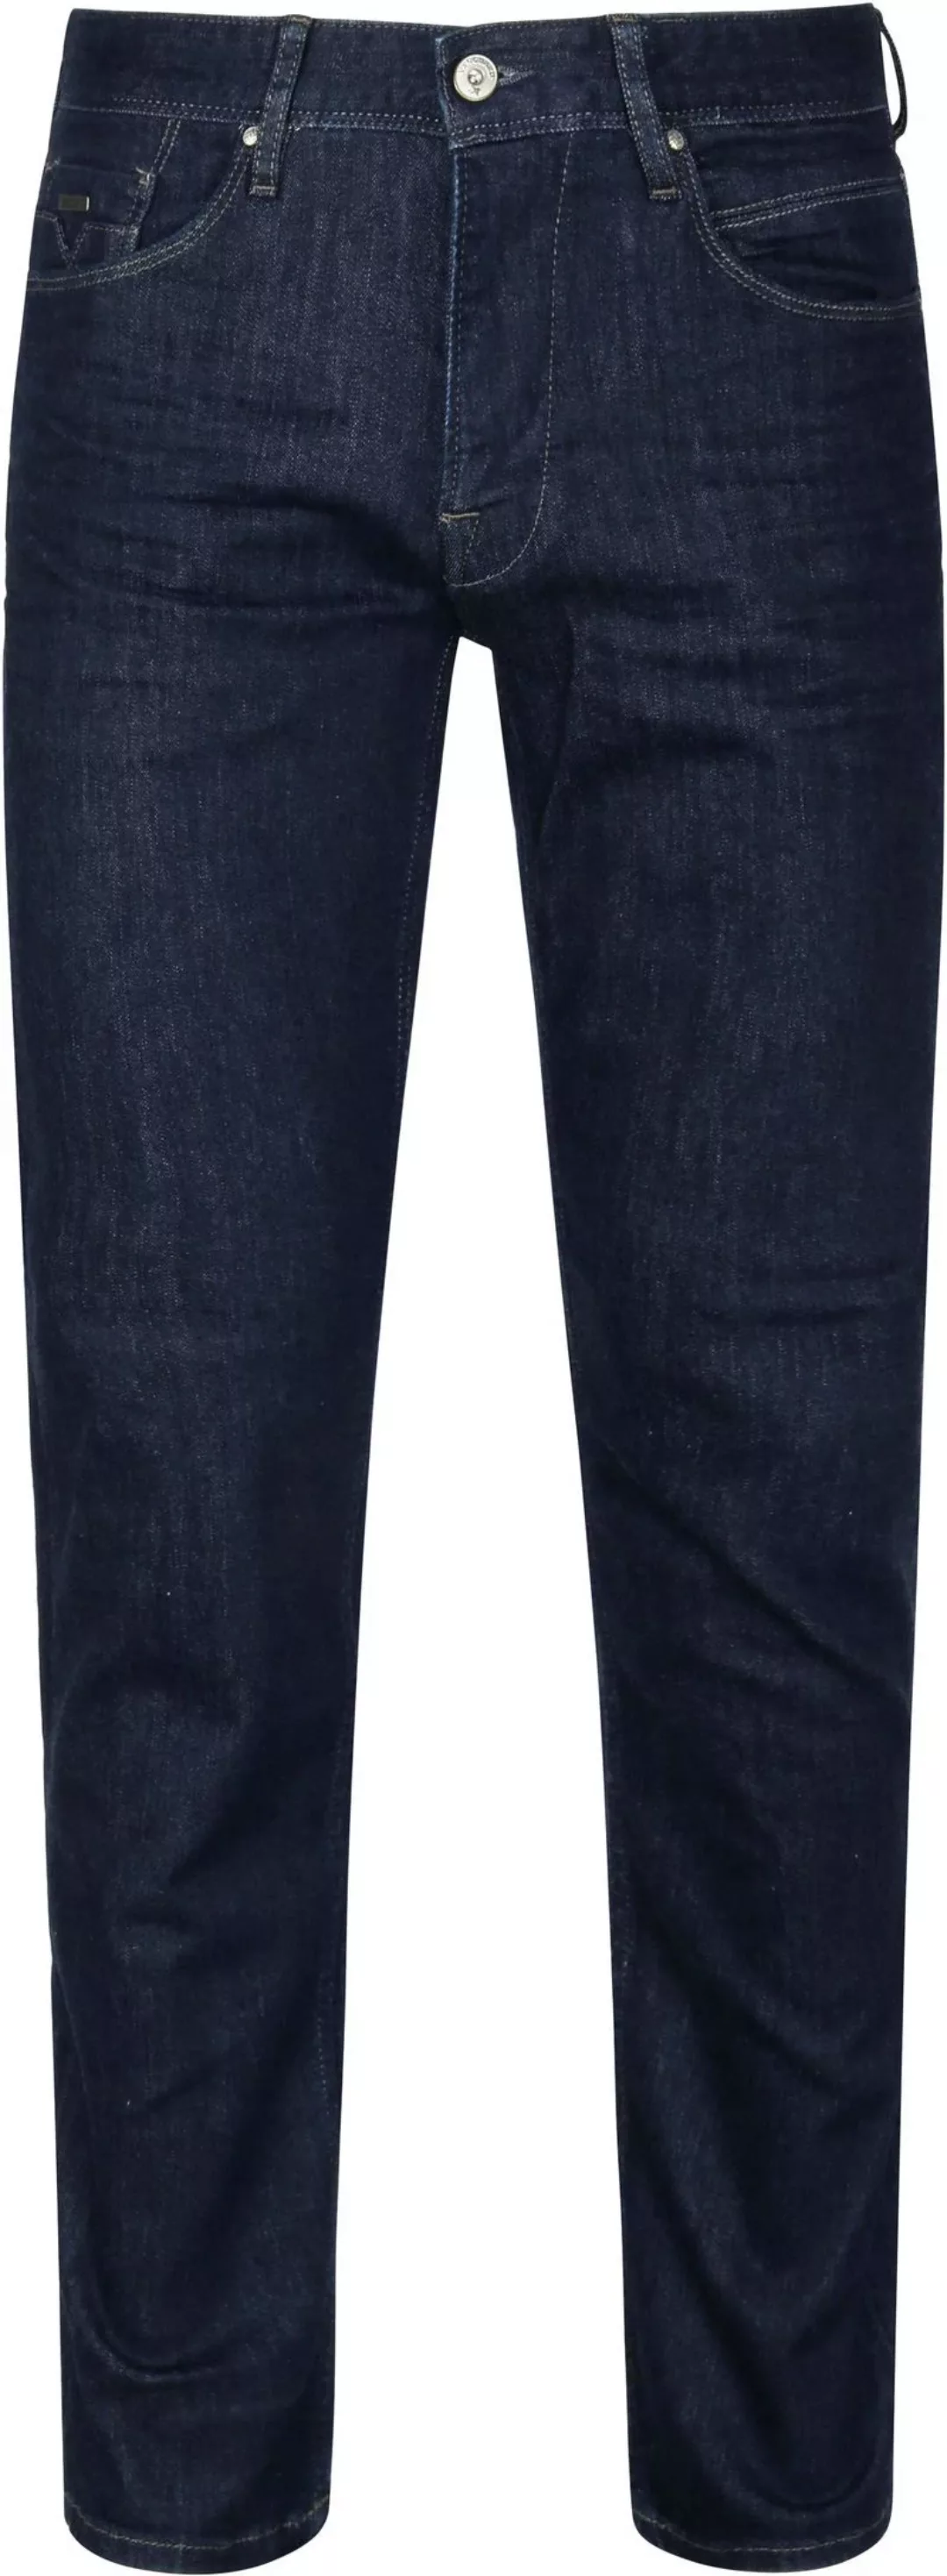 Vanguard Jeans V7 Rider Dunkelblau - Größe W 30 - L 34 günstig online kaufen